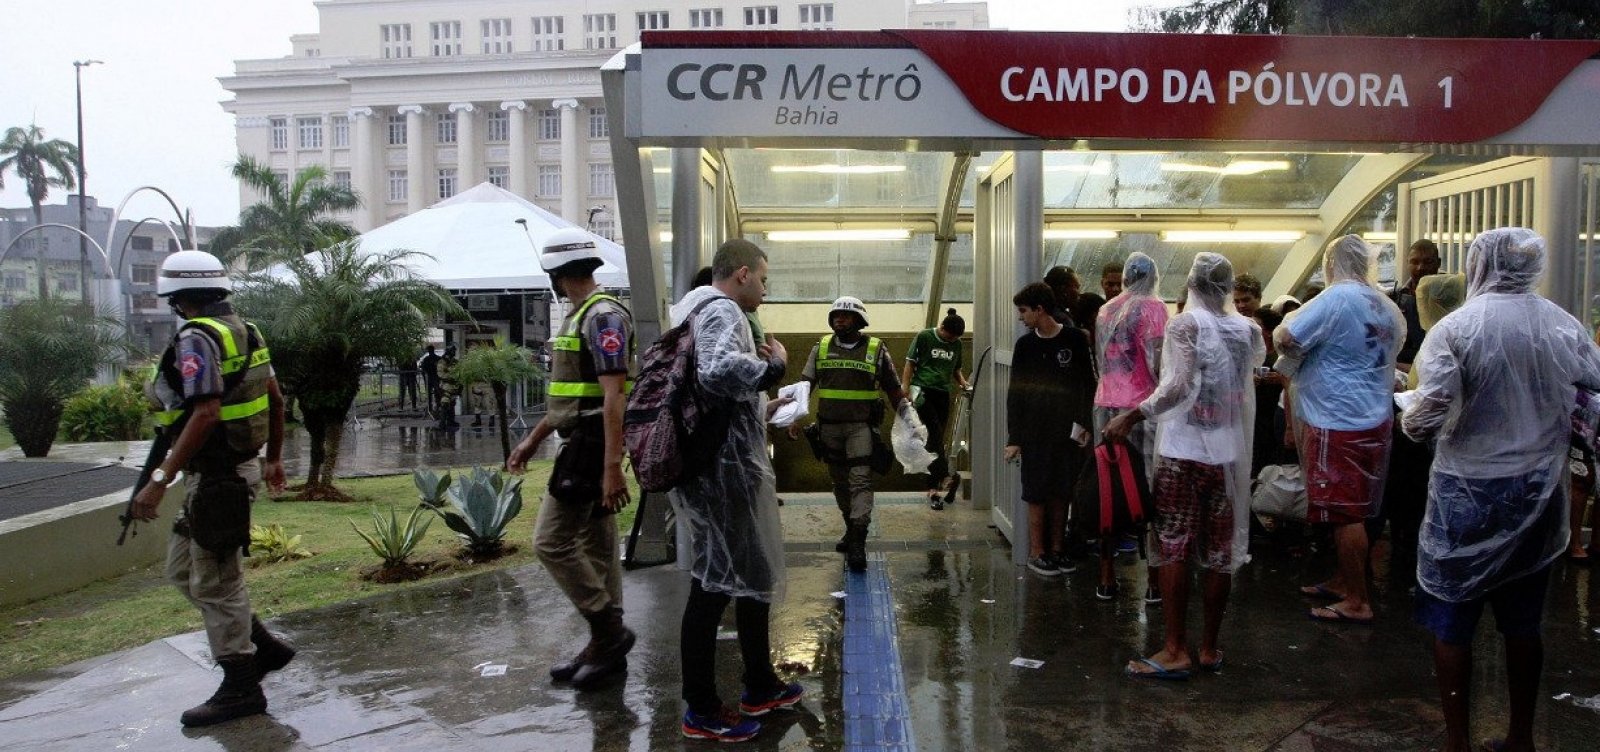 Sem ônibus, metrô vai funcionar até mais tarde por causa do jogo do Bahia